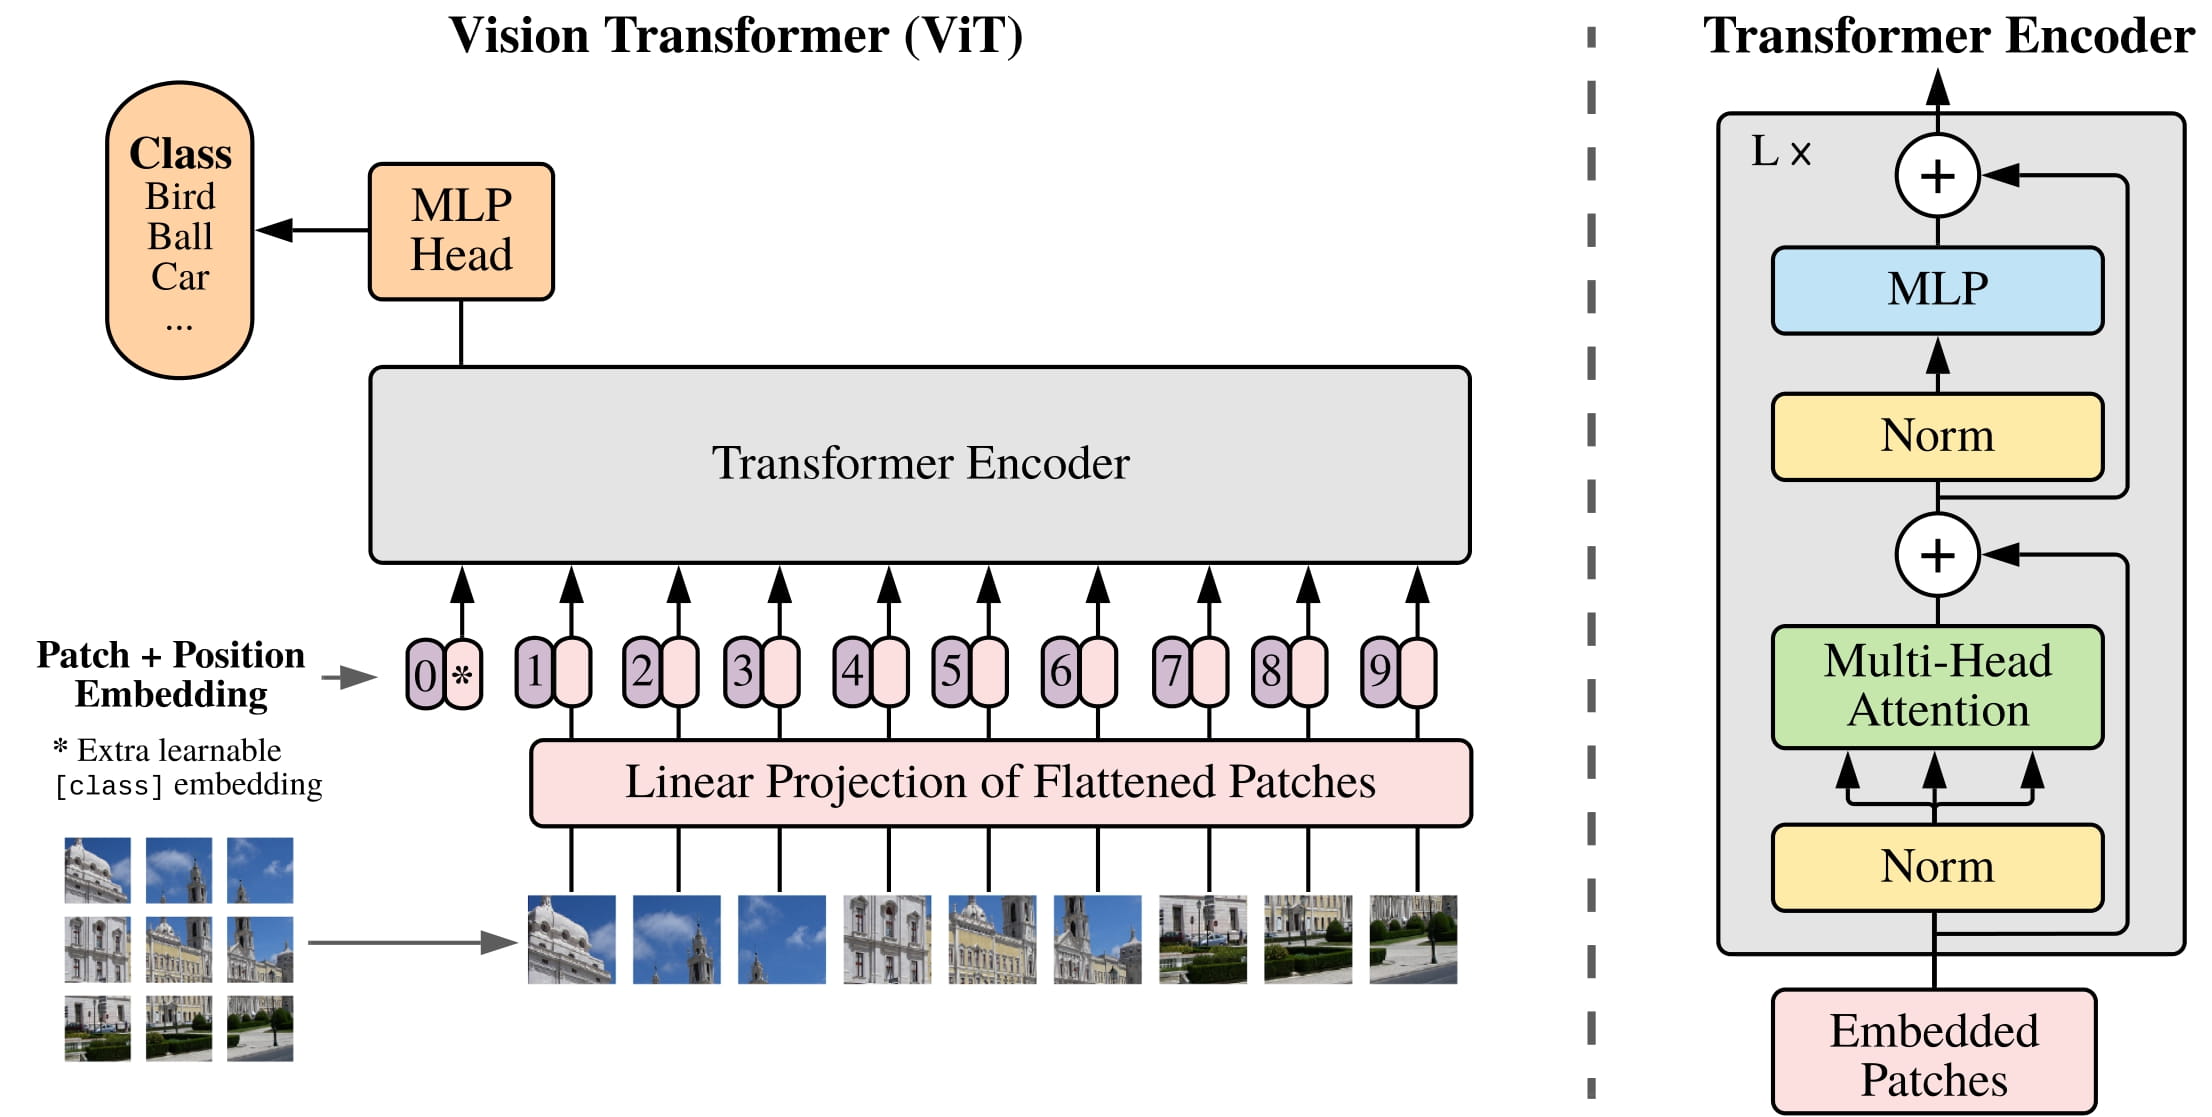 ViT (Vision Transformer)